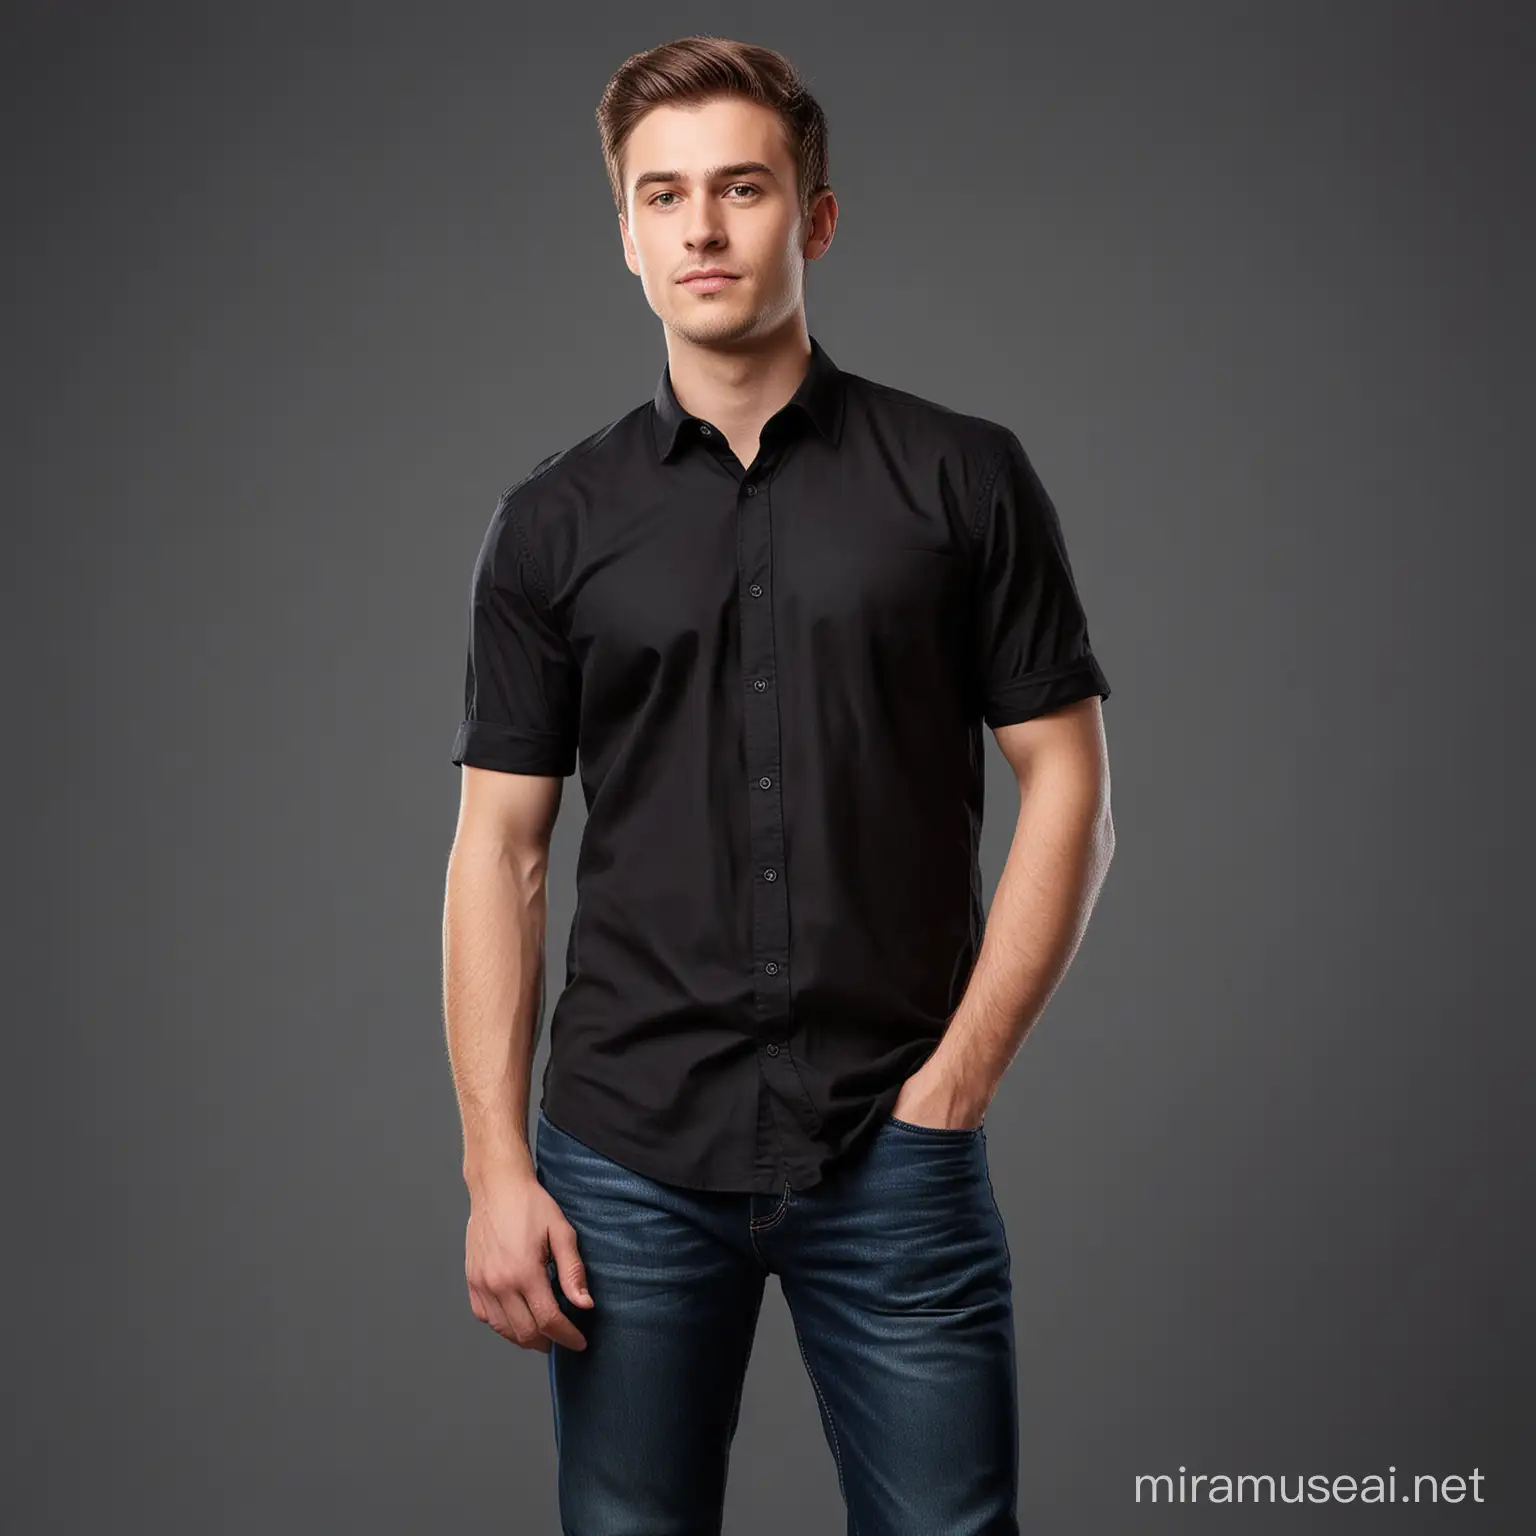 Contemplative Young Businessman in Black Shirt Portrait